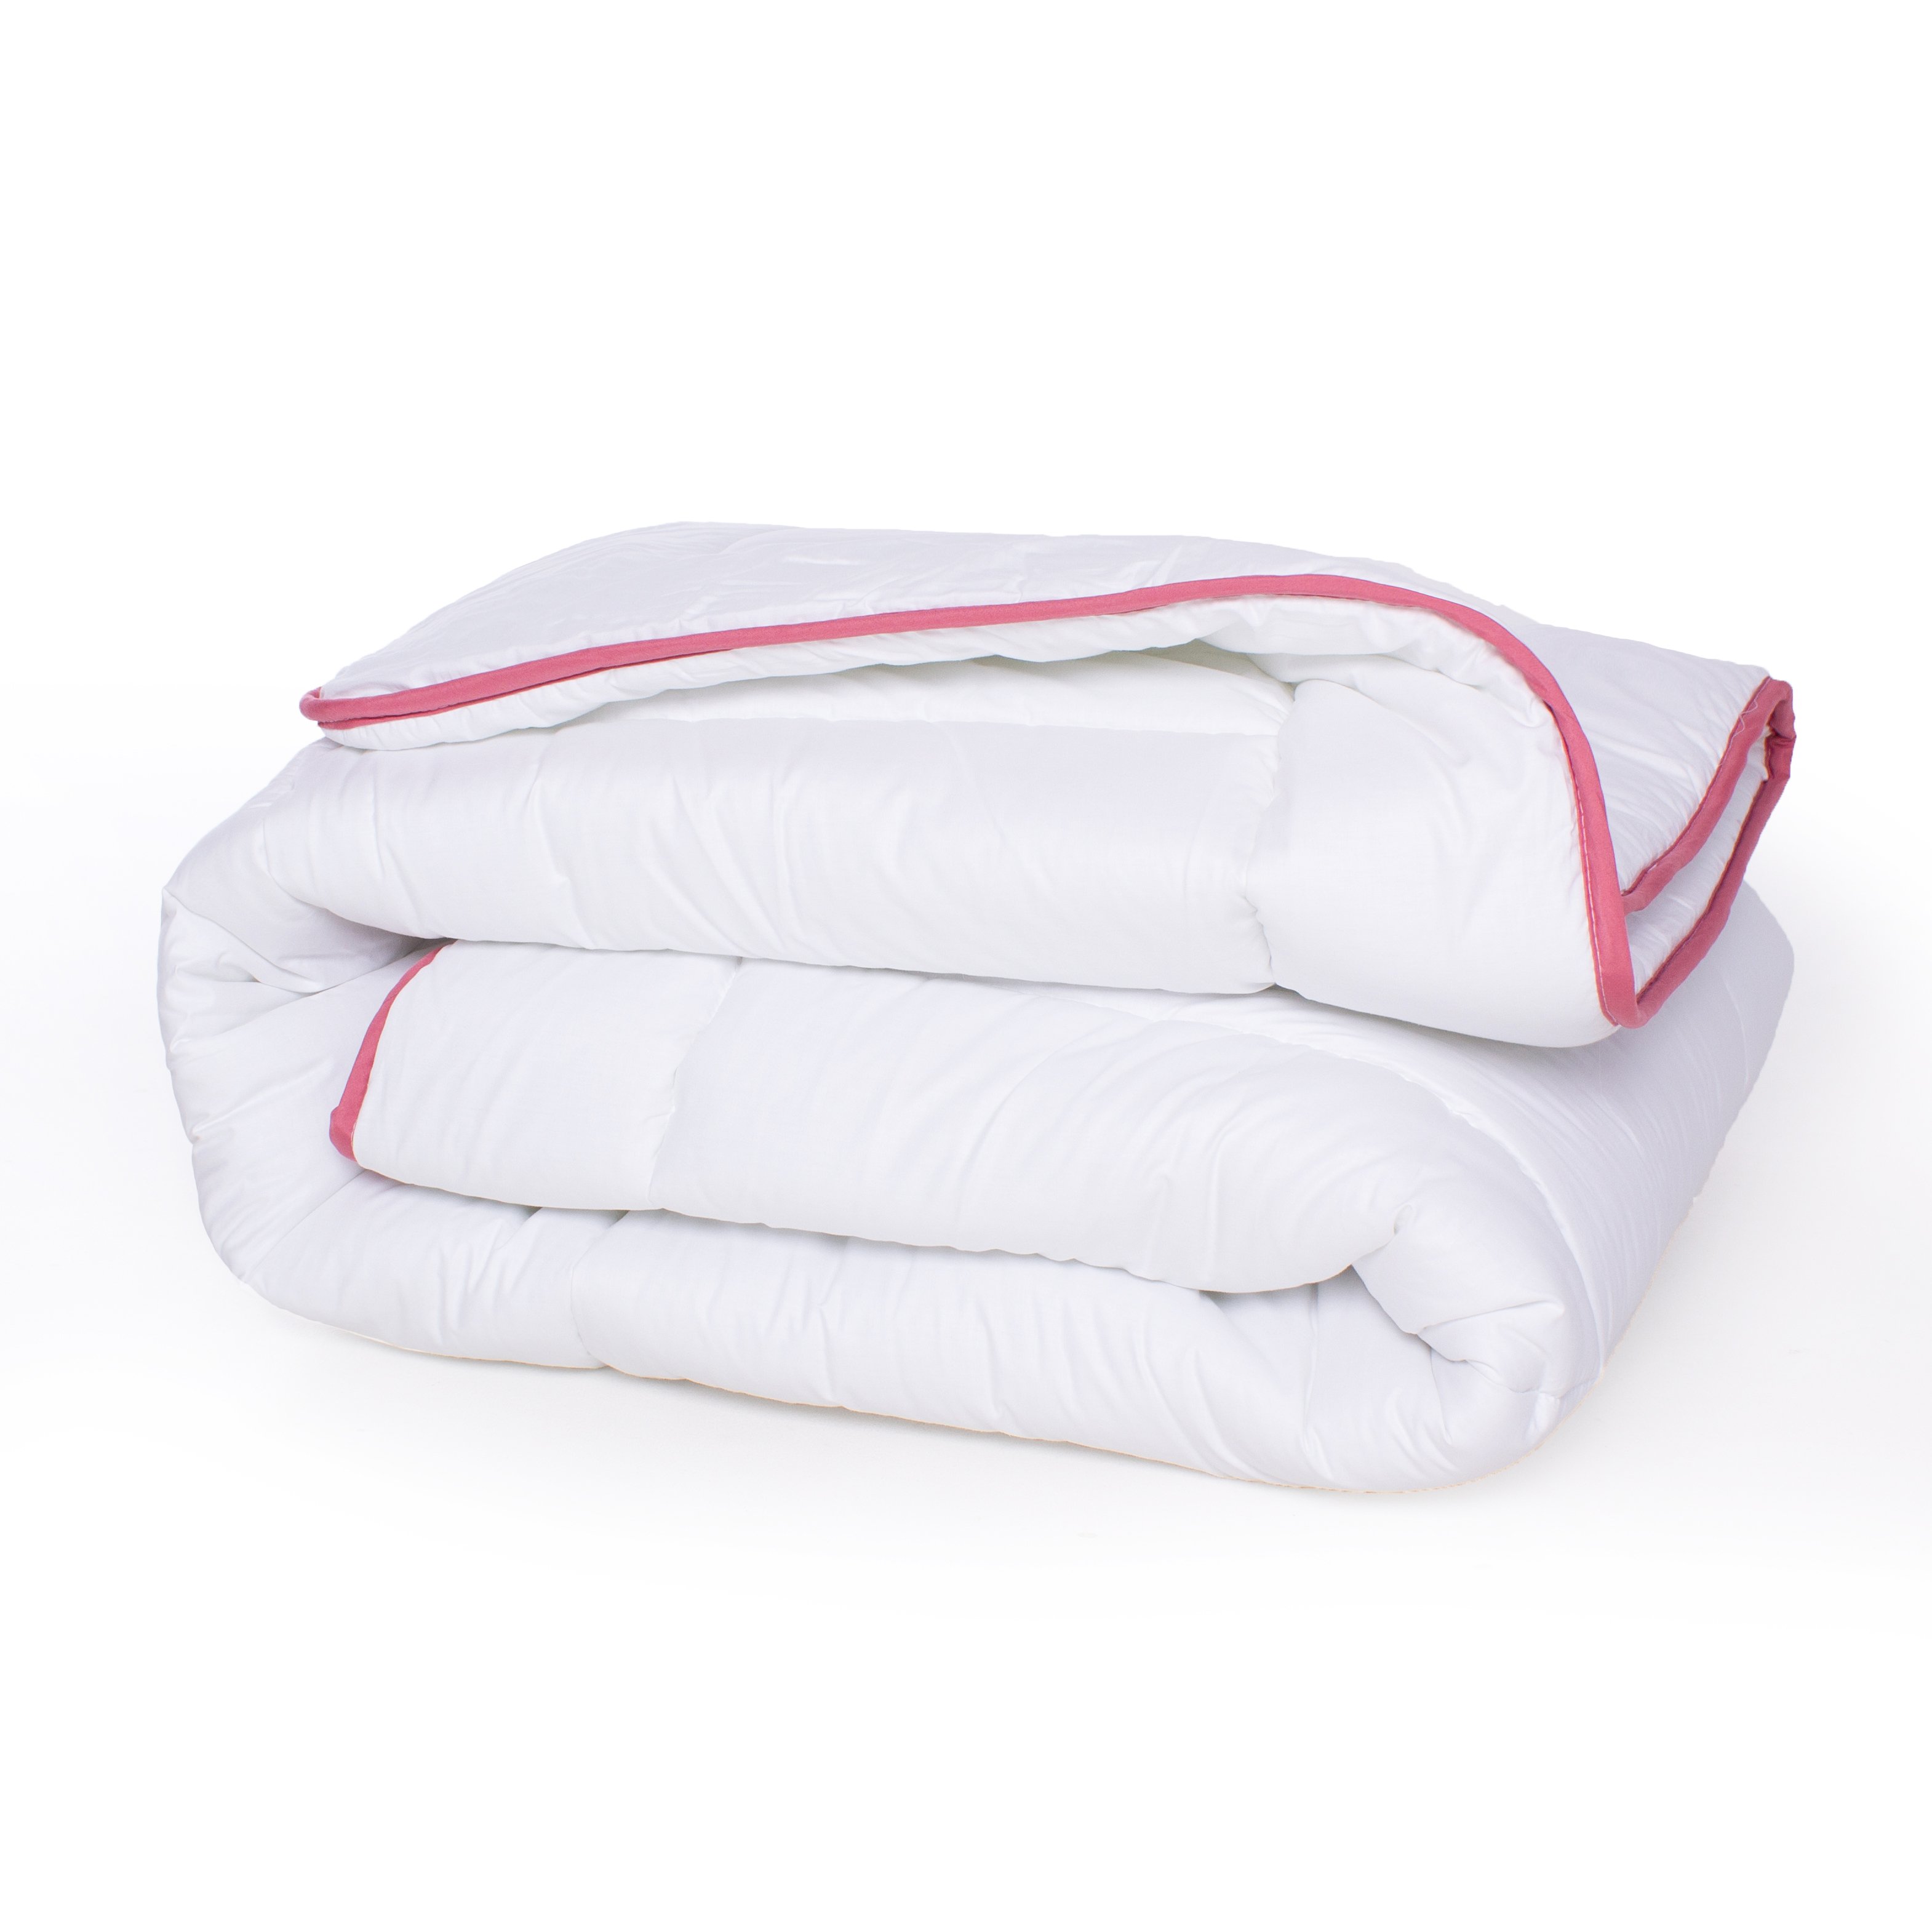 Одеяло шерстяное MirSon DeLuxe №029, демисезонное, 220x240 см, белое - фото 2